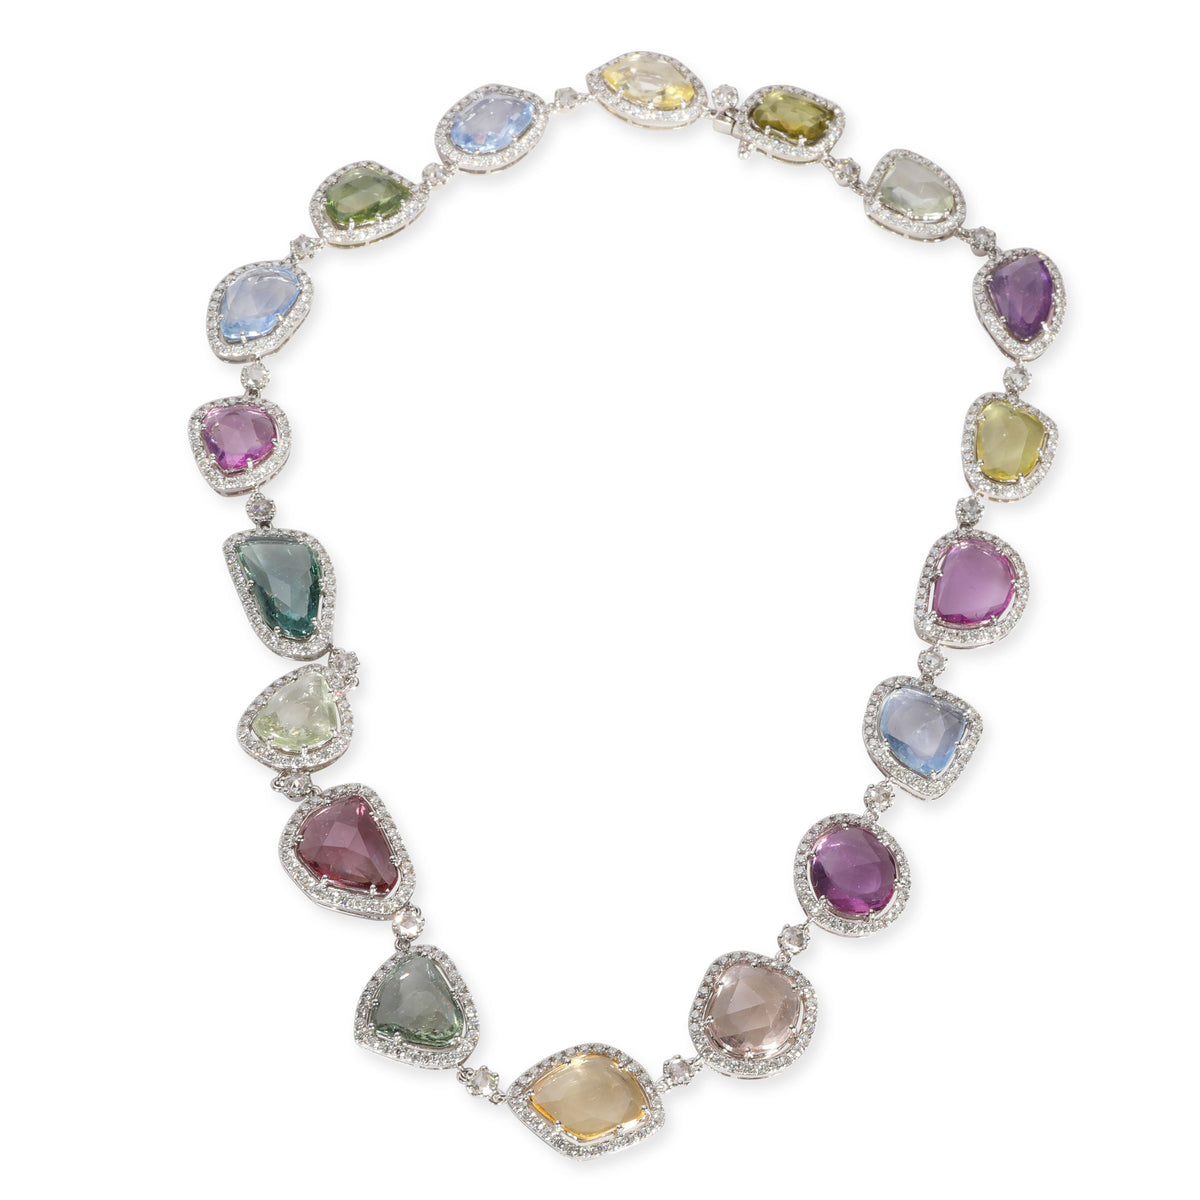 Halo Diamond & Multi Colored Sapphire Slice Necklace in 18K White Gold 7.73 CTW